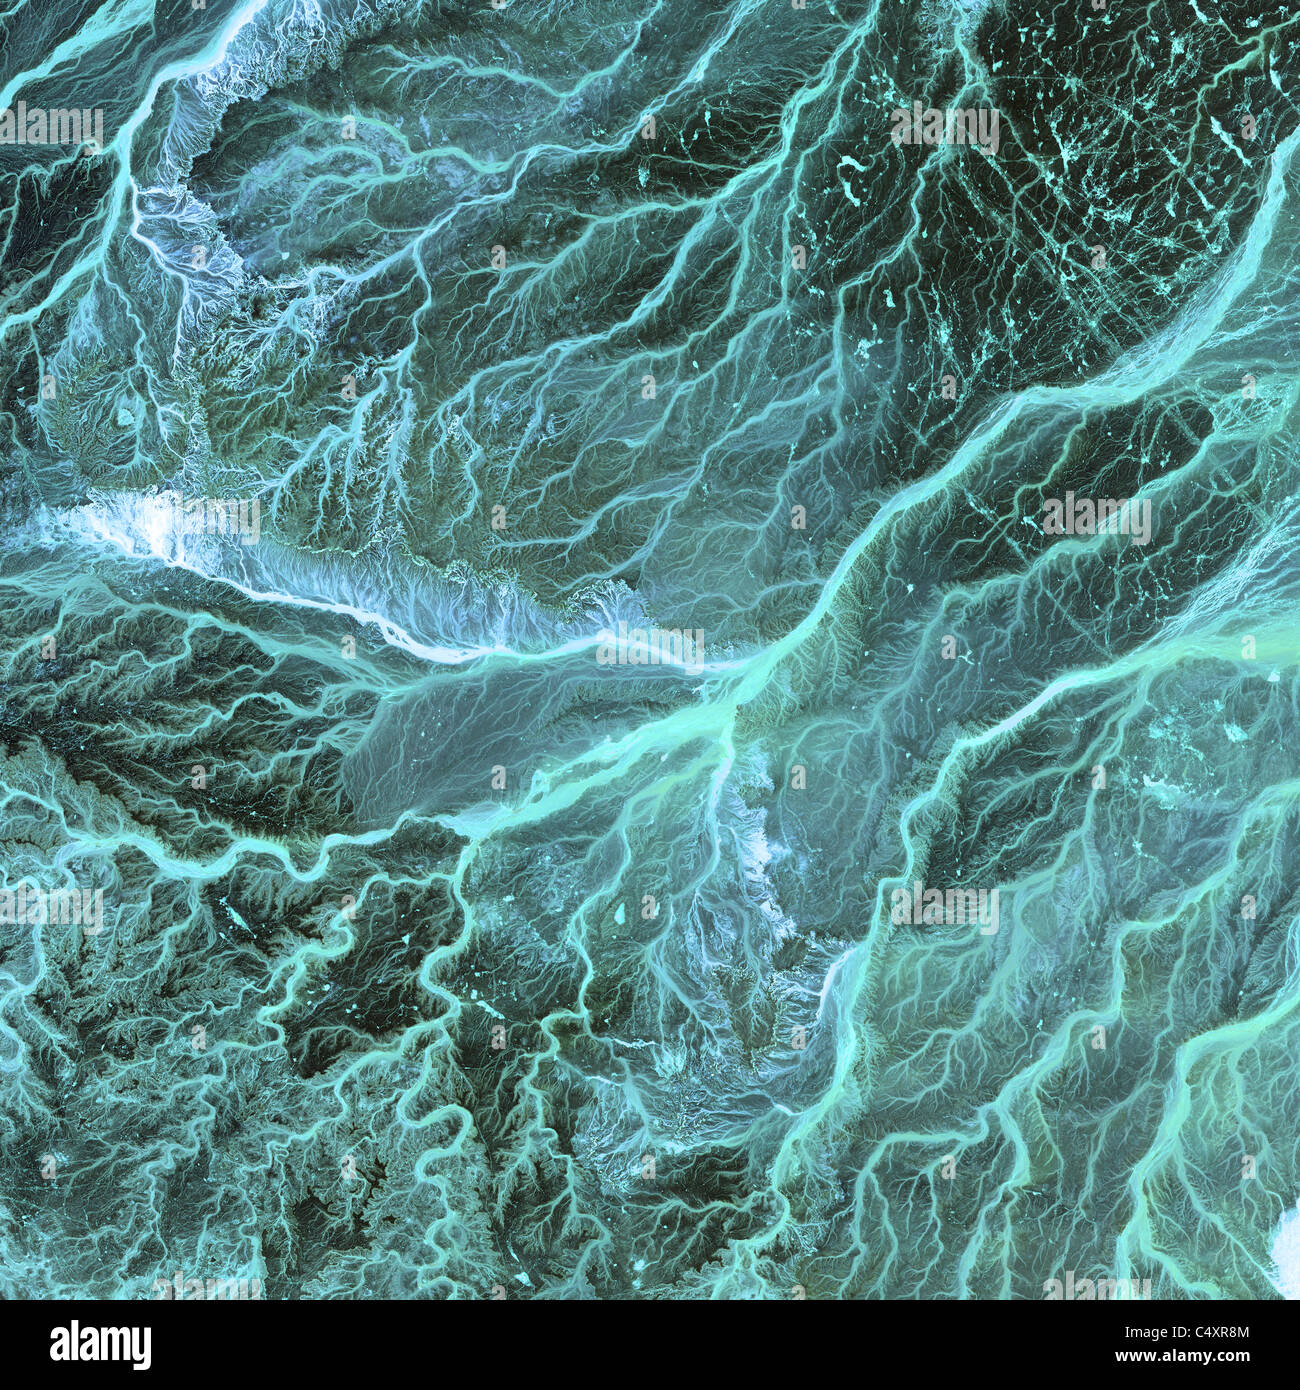 Stark, paysage aride du sud-est de la Jordanie comme de l'espace dans cette image satellite de la NASA. Banque D'Images